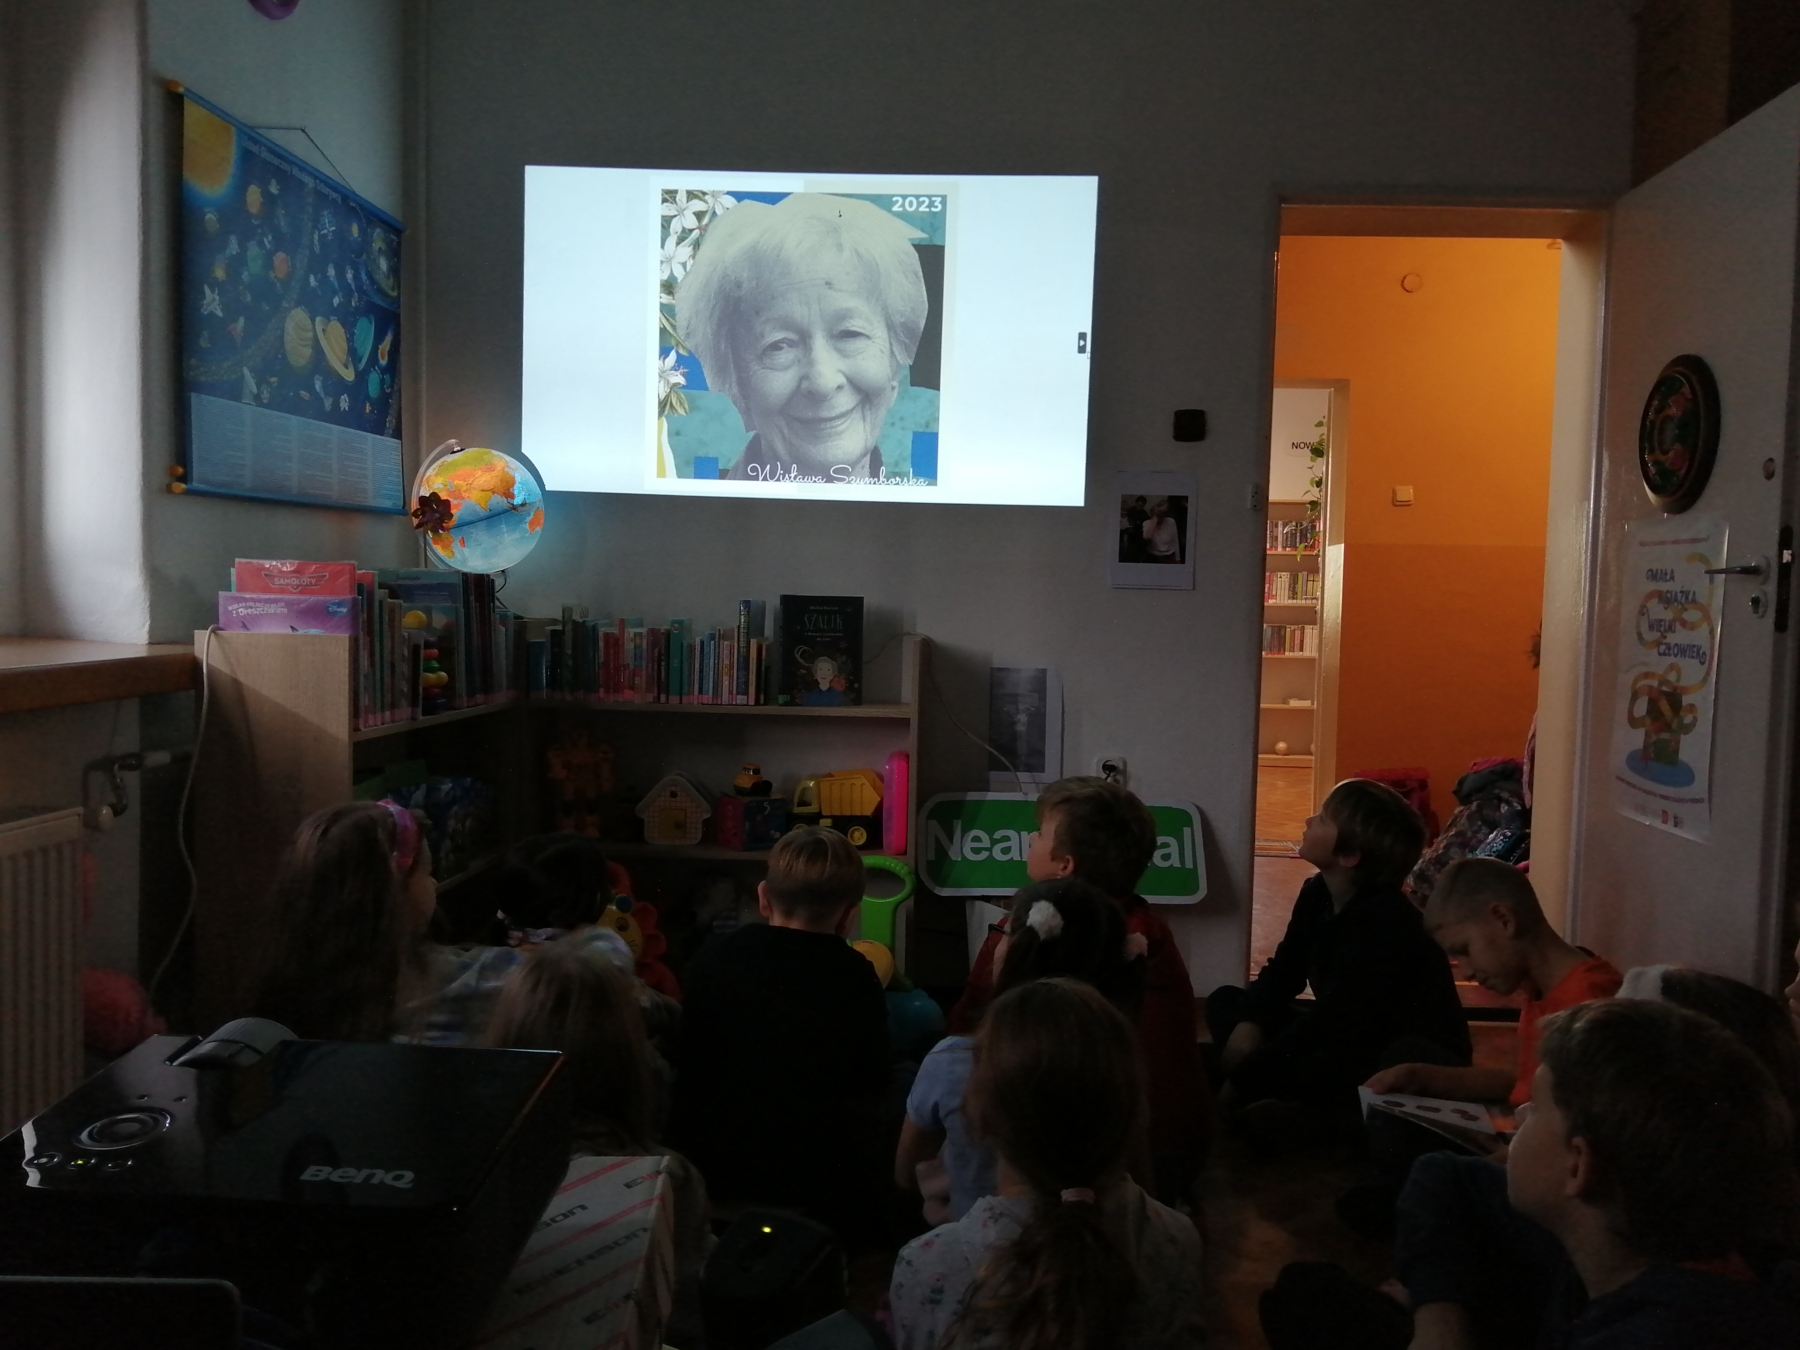 Uczniowie oglądają prezentację dotyczącą Wisławy Szymborskiej